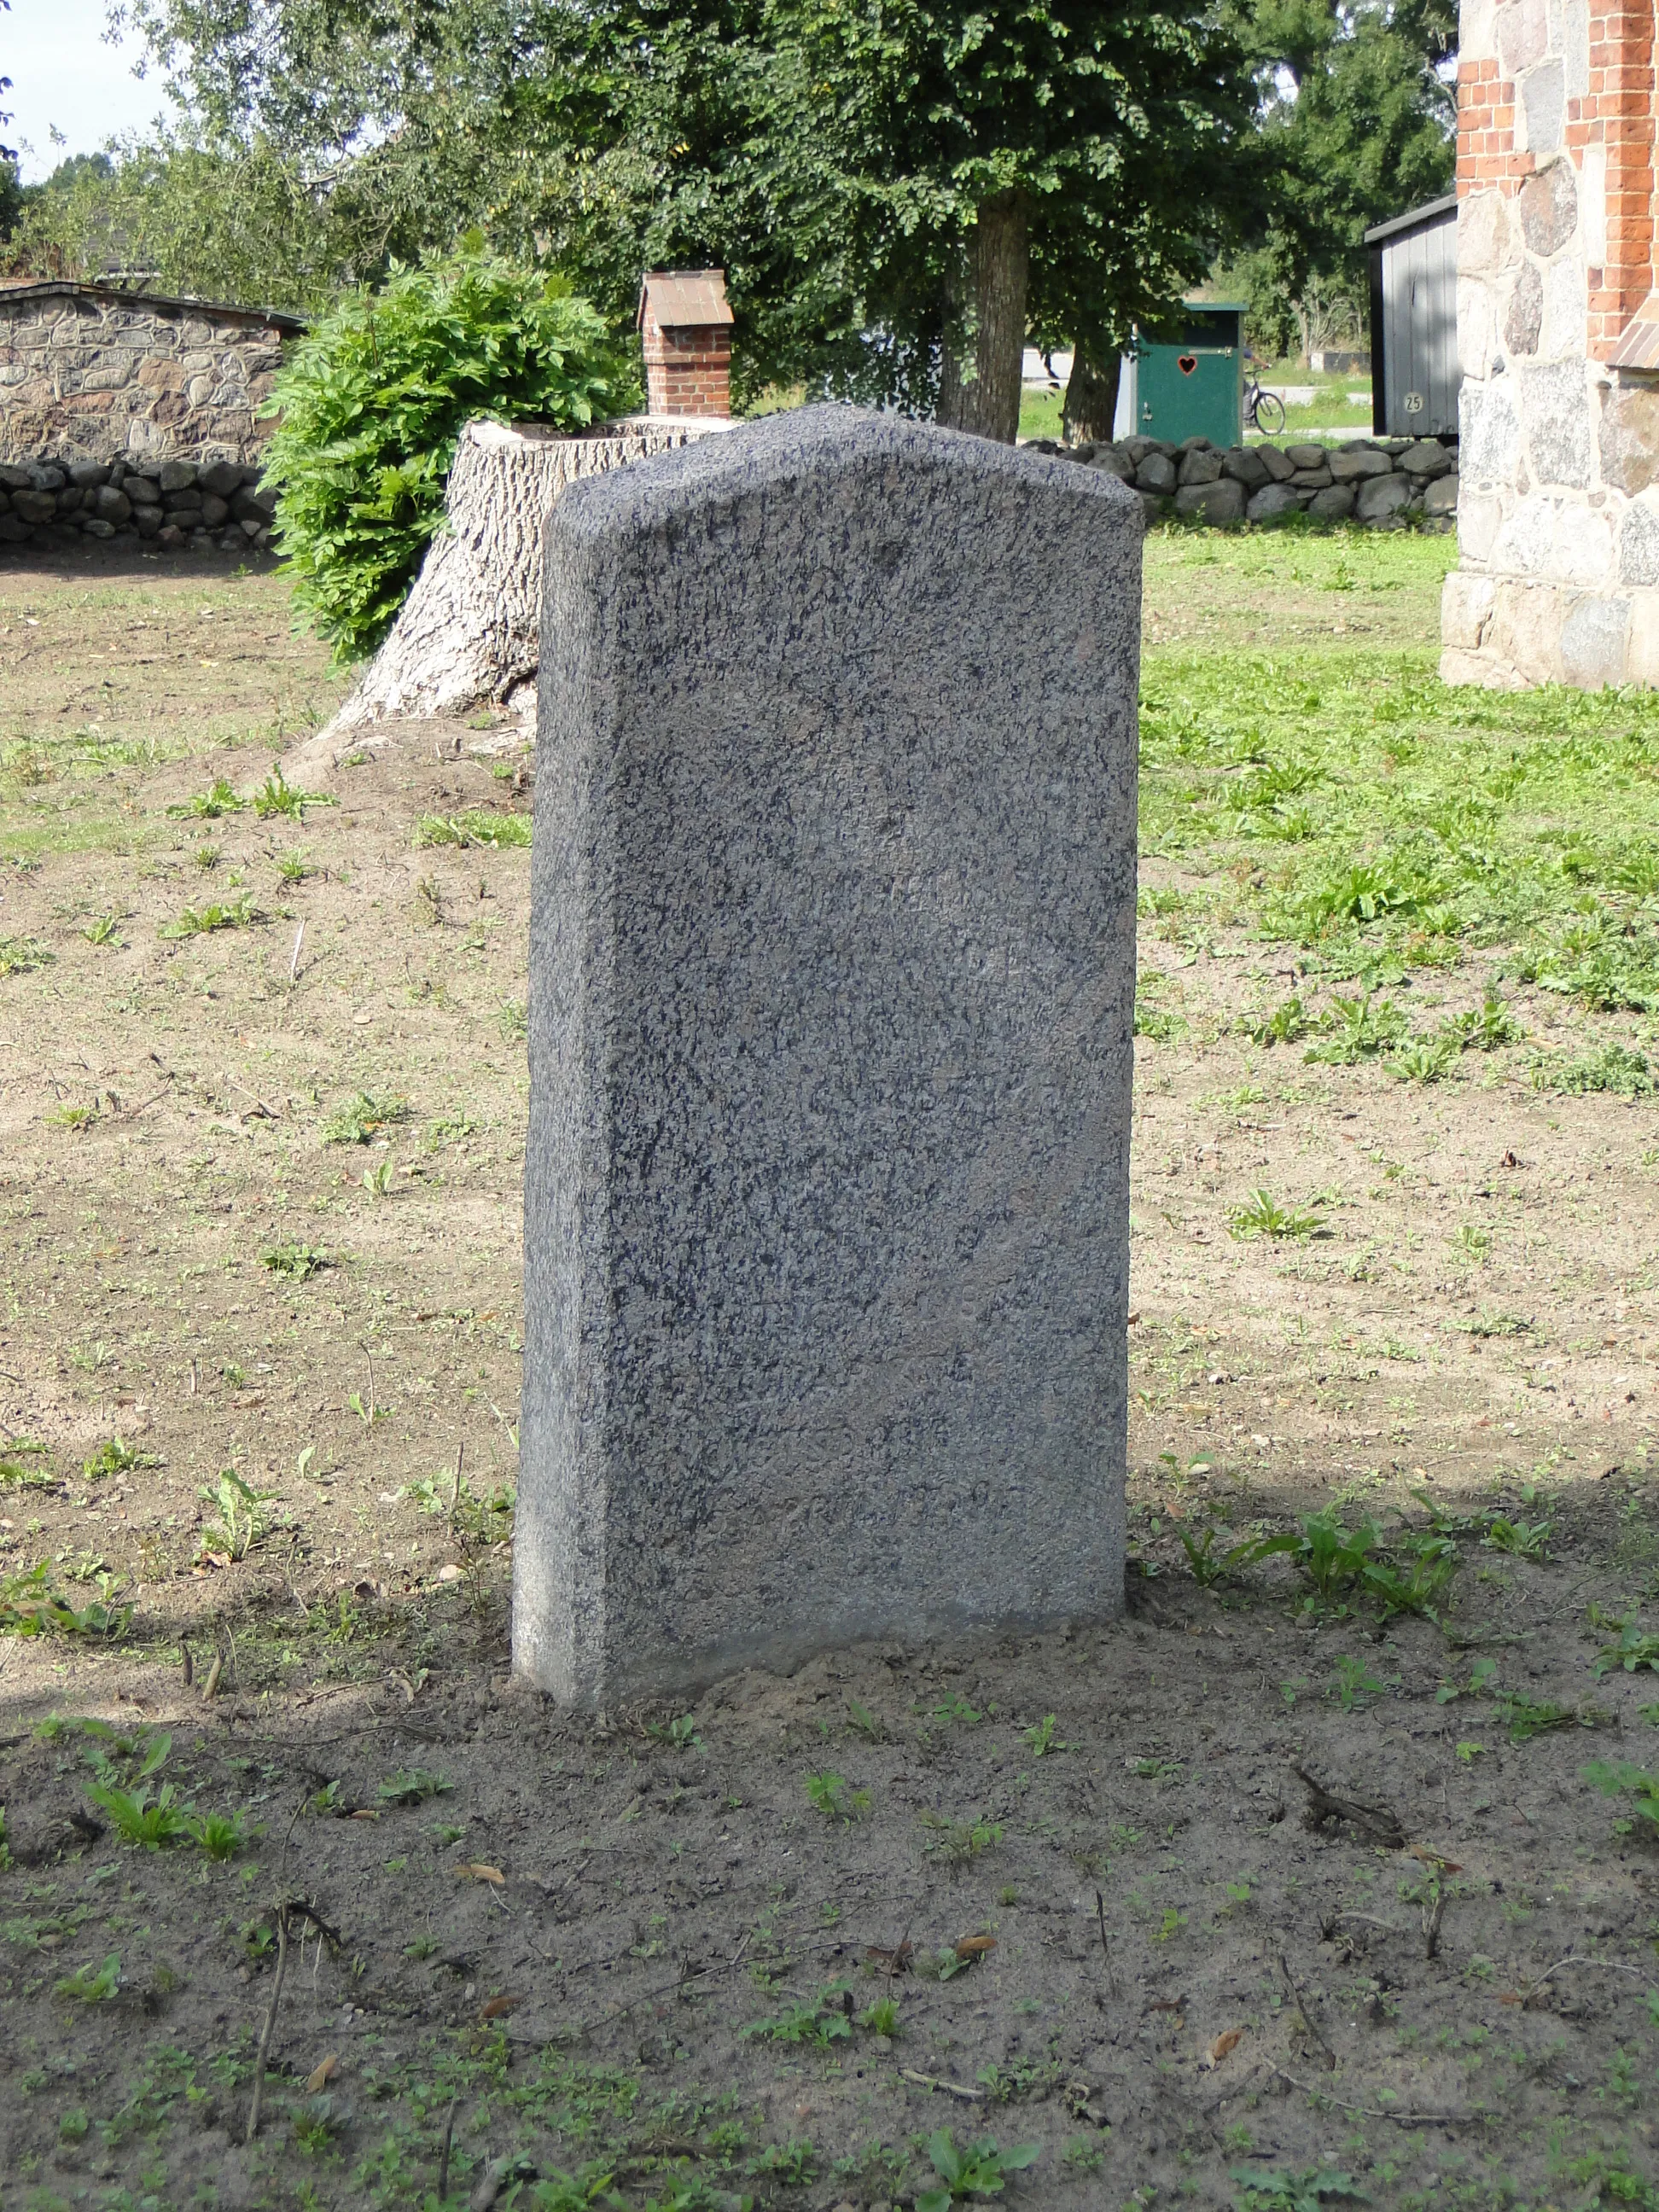 Photo showing: Gravestone at church yard in Dargelütz, district Ludwigslust-Parchim, Mecklenburg-Vorpommern, Germany